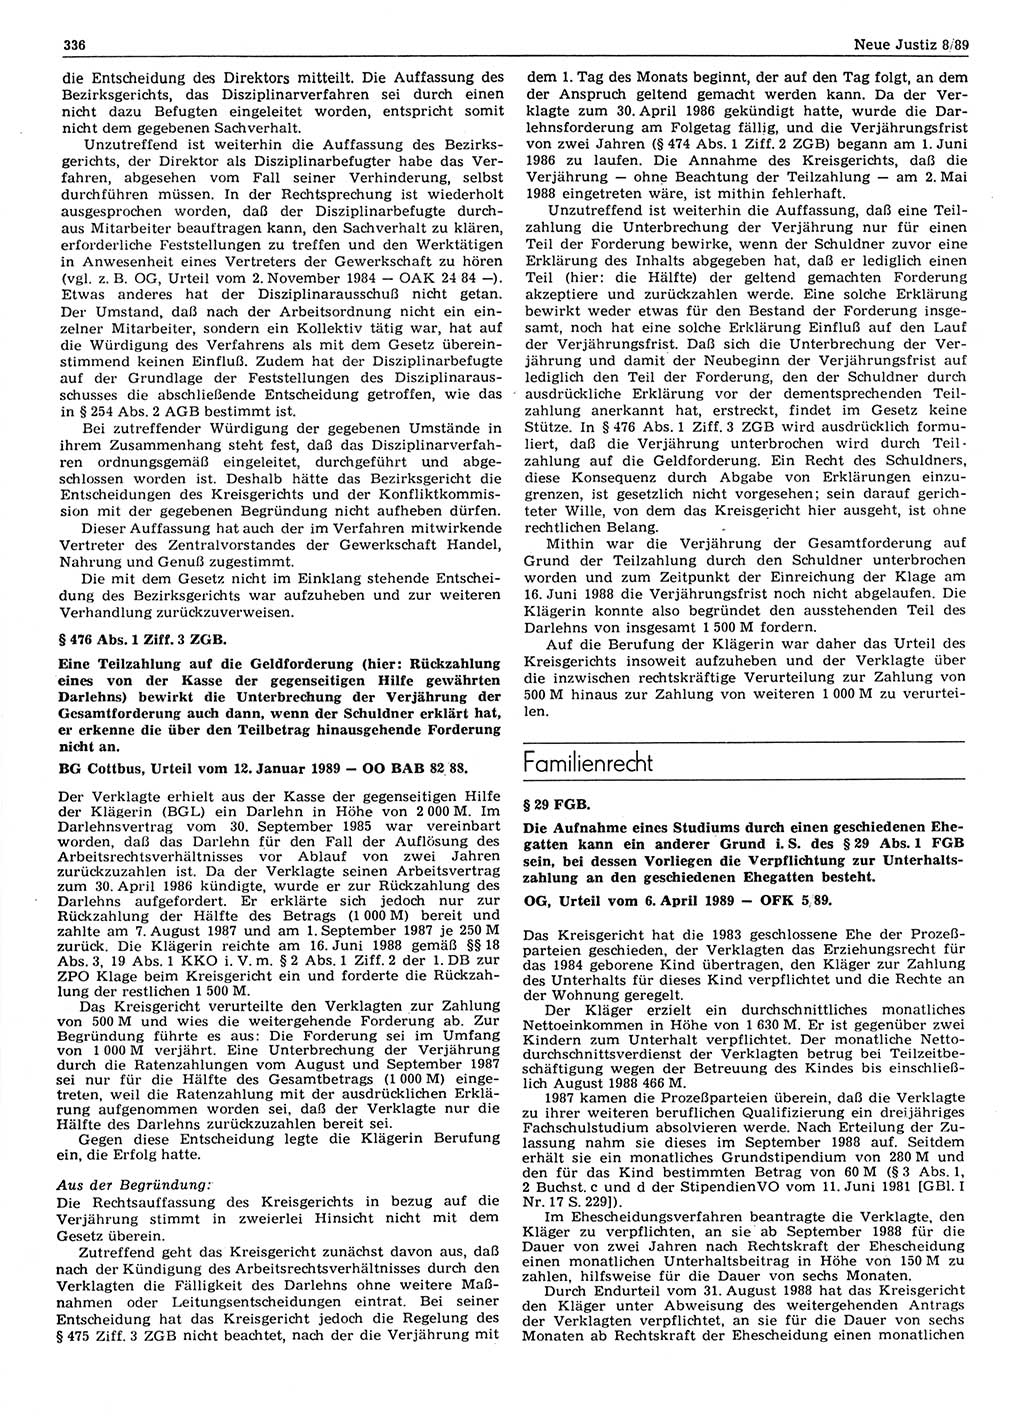 Neue Justiz (NJ), Zeitschrift für sozialistisches Recht und Gesetzlichkeit [Deutsche Demokratische Republik (DDR)], 43. Jahrgang 1989, Seite 336 (NJ DDR 1989, S. 336)